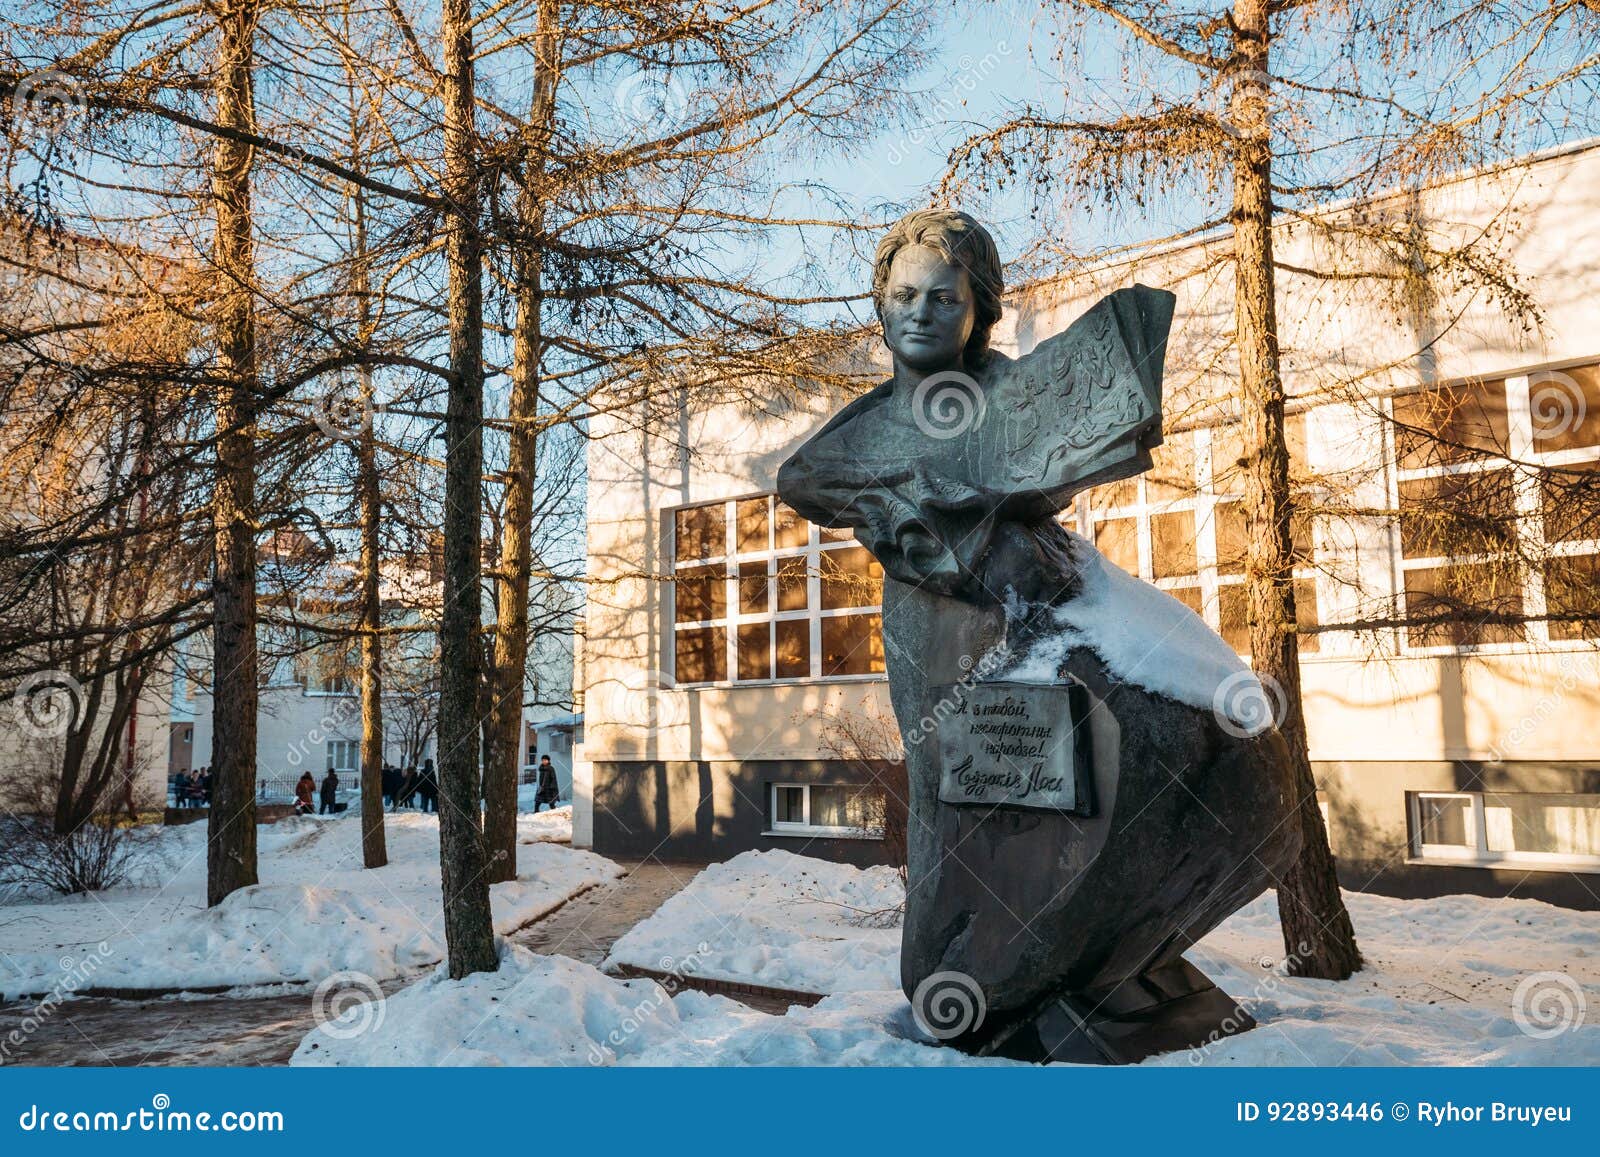 vitebsk, belarus. monument to soviet poet, prose writer, translator